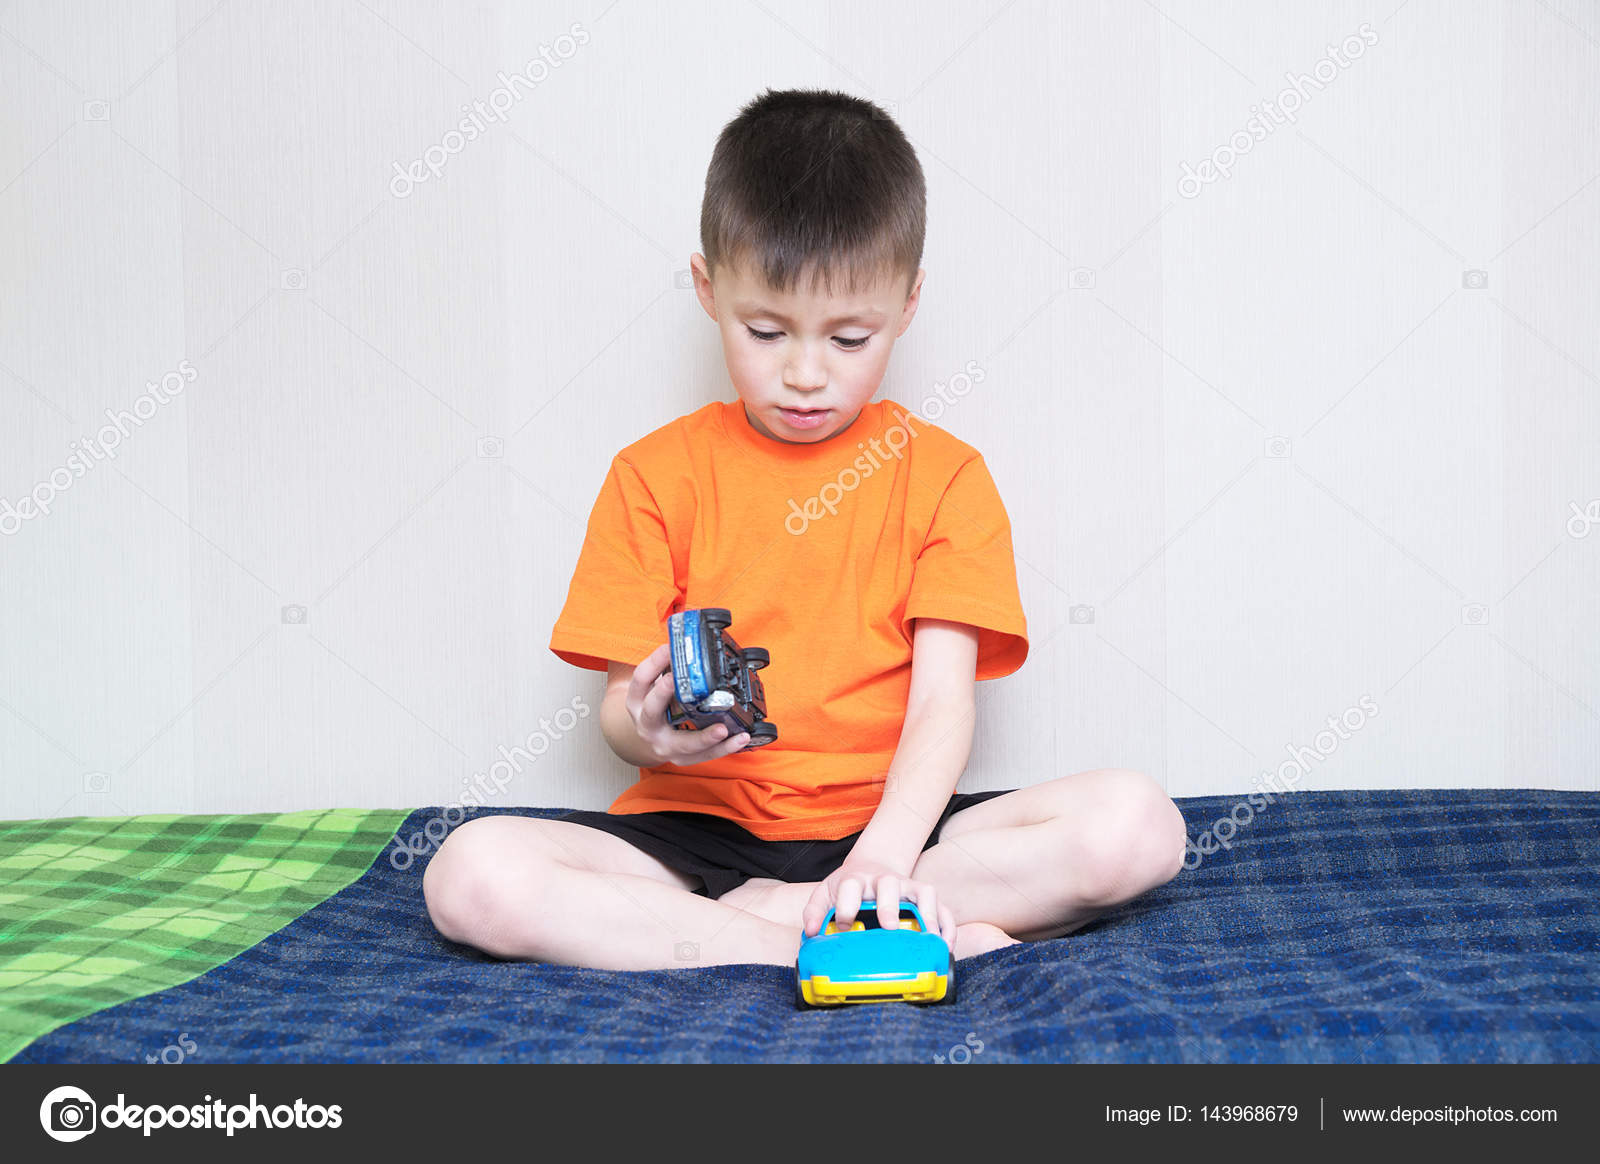 Dois meninos brincando com brinquedos na sala de jogos.